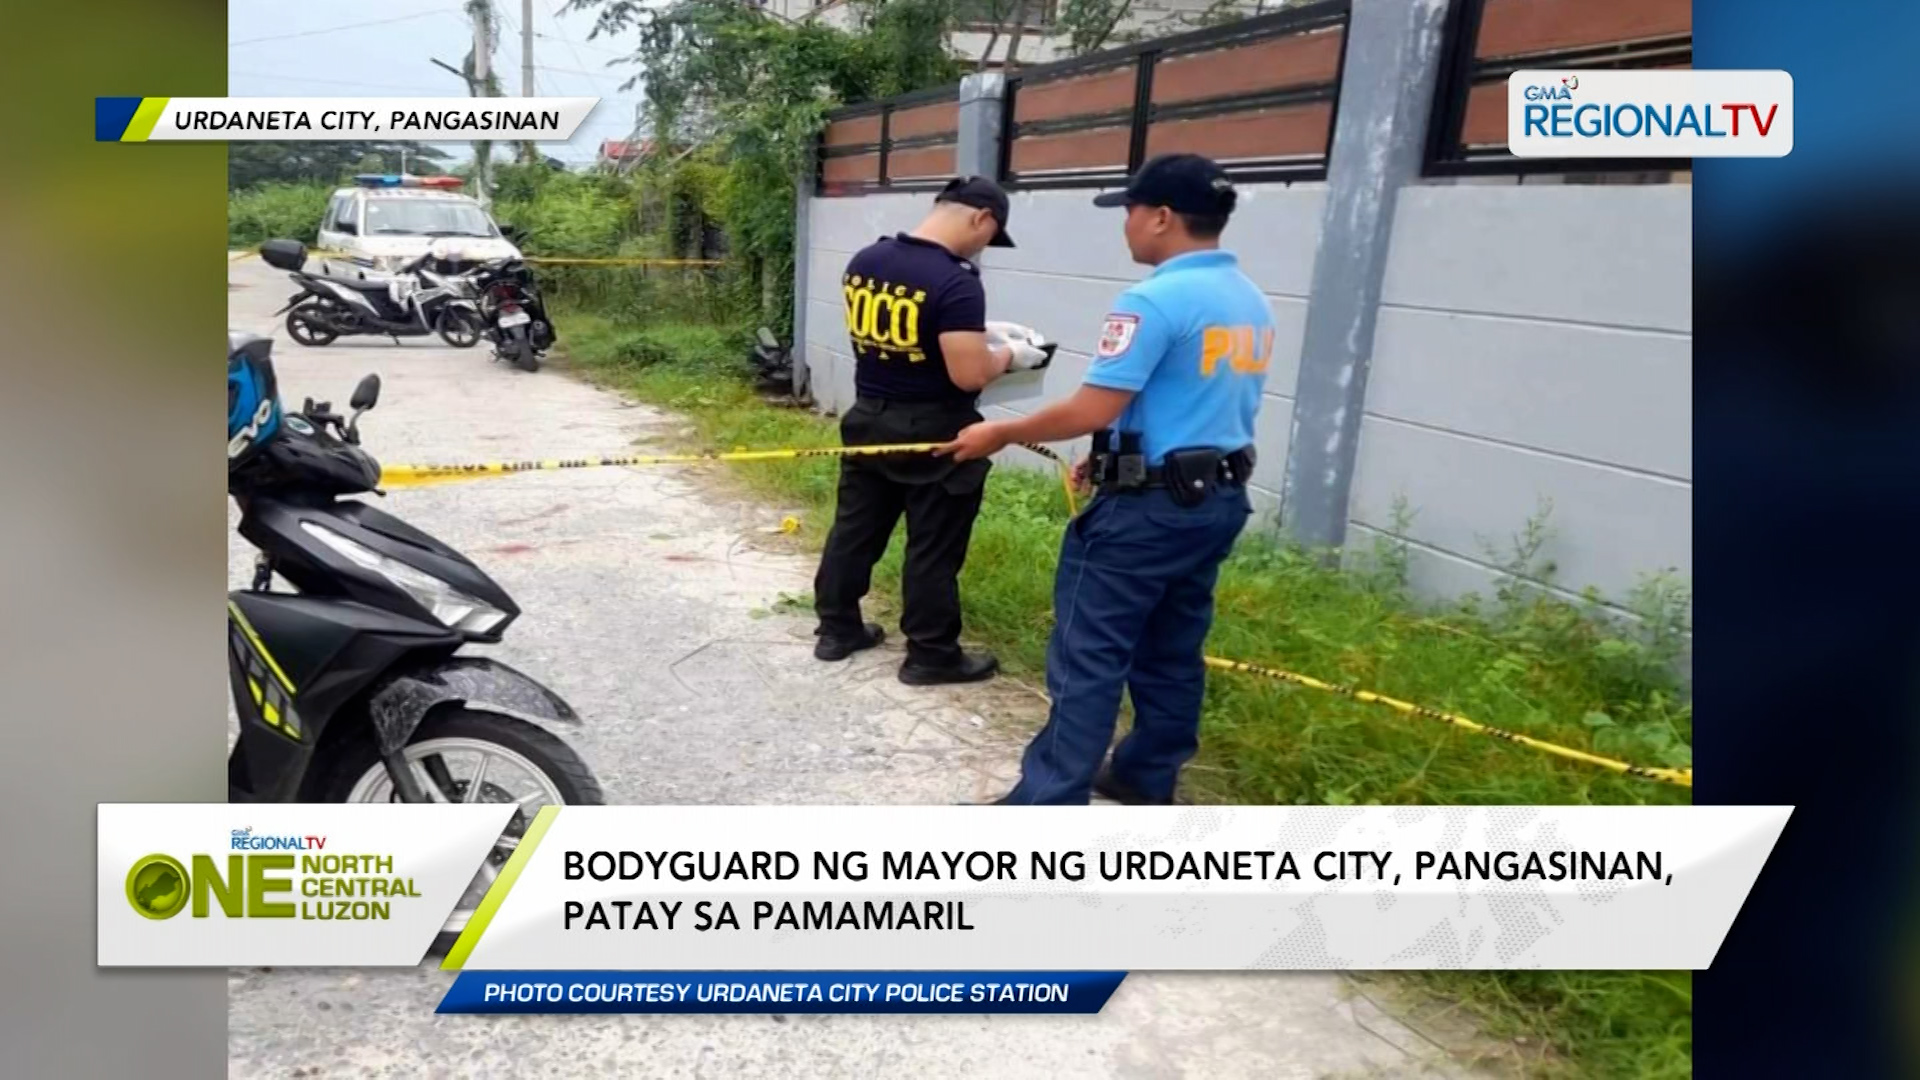 Bodyguard ng mayor ng Urdaneta City, Pangasinan, patay sa pamamaril